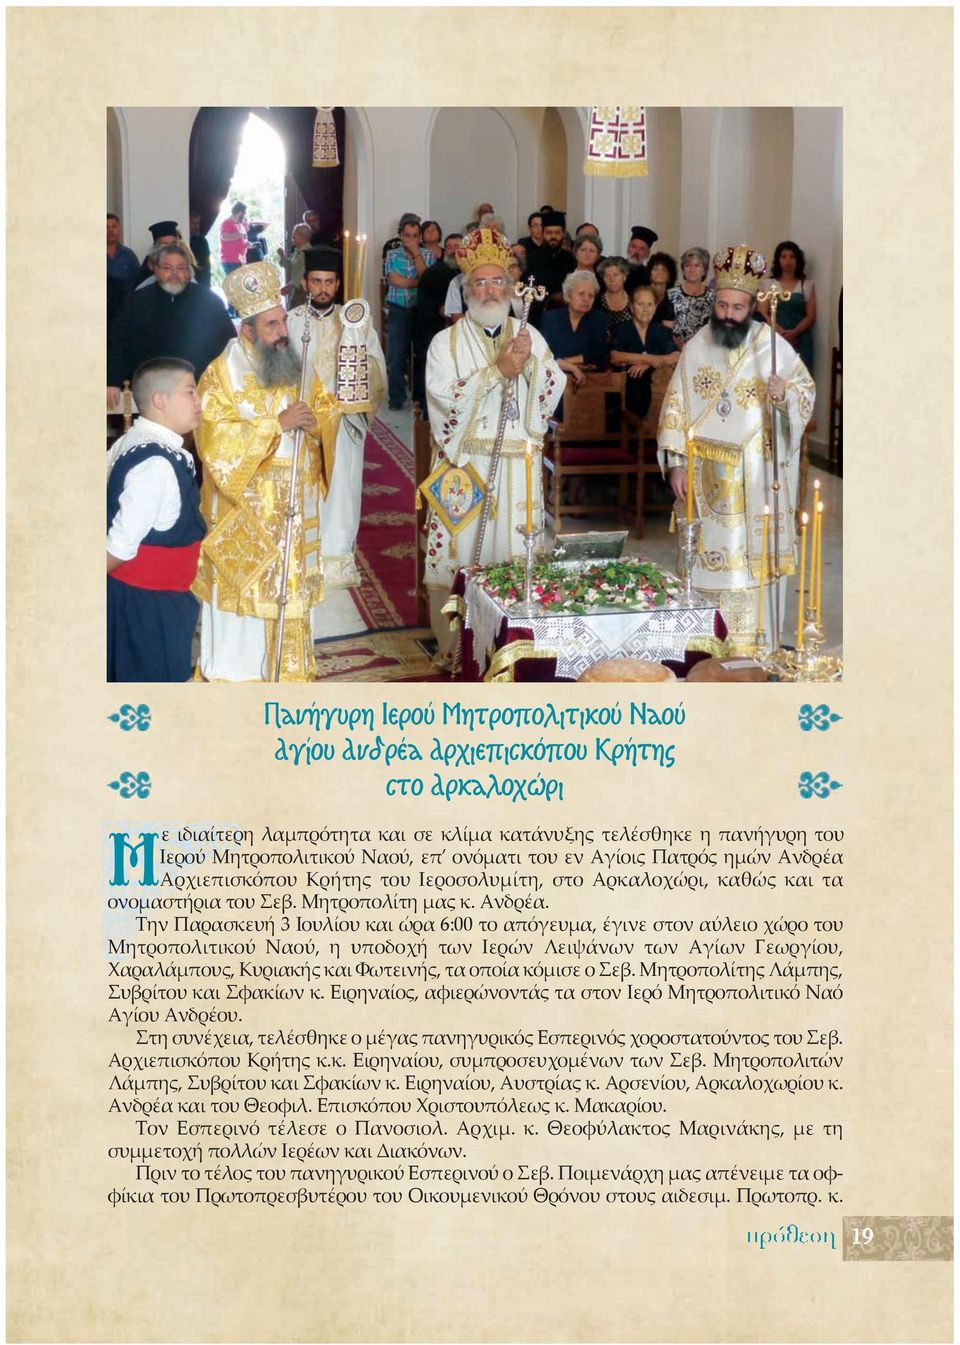 Αρχιεπισκόπου Κρήτης του Ιεροσολυμίτη, στο Αρκαλοχώρι, καθώς και τα ονομαστήρια του Σεβ. Μητροπολίτη μας κ. Ανδρέα.